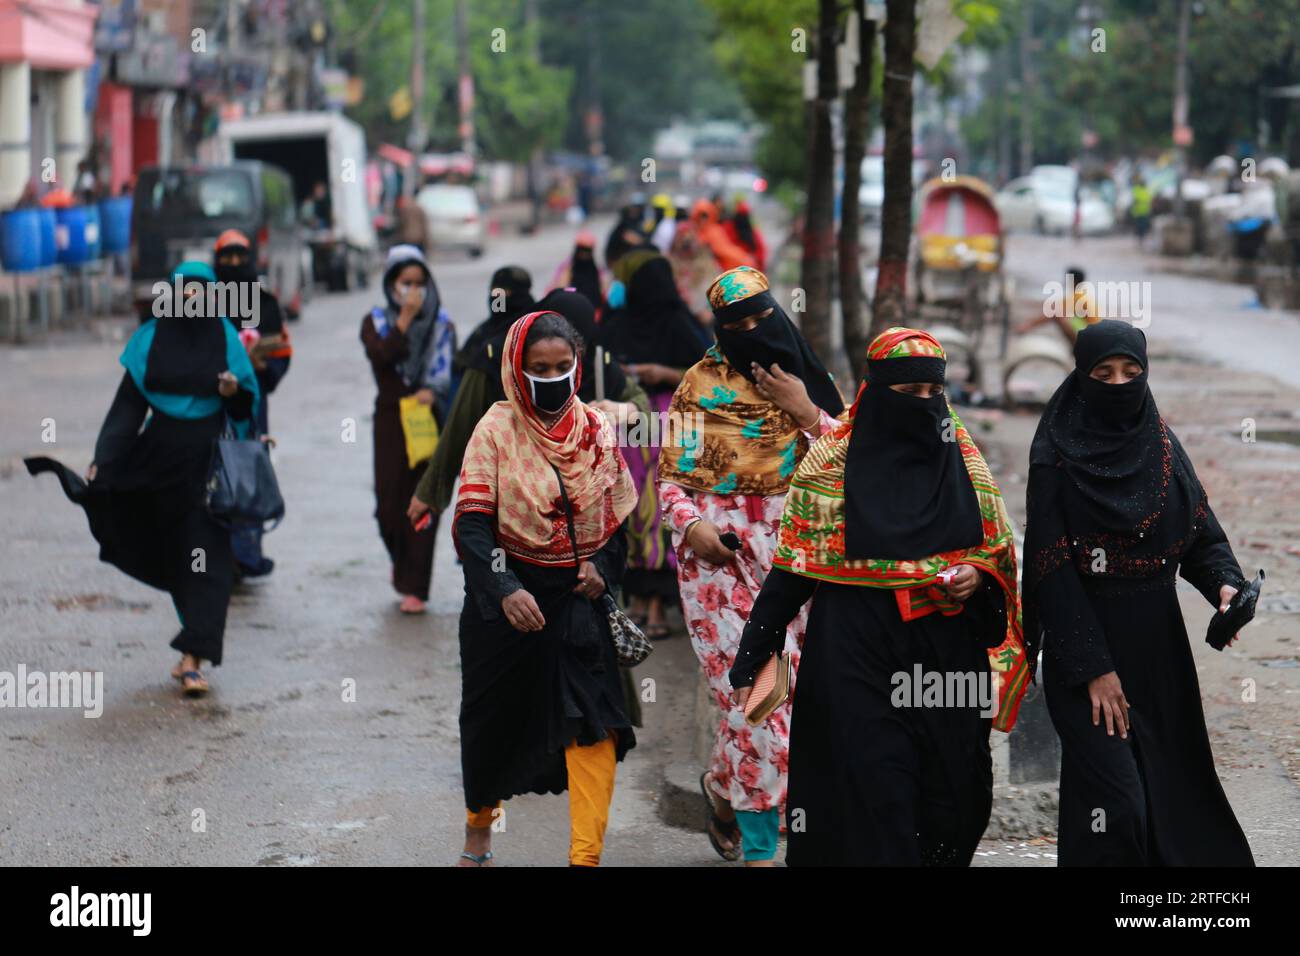 DHAKA, BANGLADESH - 28 AVRIL 2020 : des travailleurs du vêtement marchent dans la rue après la réouverture des usines pendant le confinement à l’échelle du pays comme mesure préventive contre la pandémie de coronavirus COVID-19 à Dhaka, au Bangladesh, le 28 avril 2020. Banque D'Images